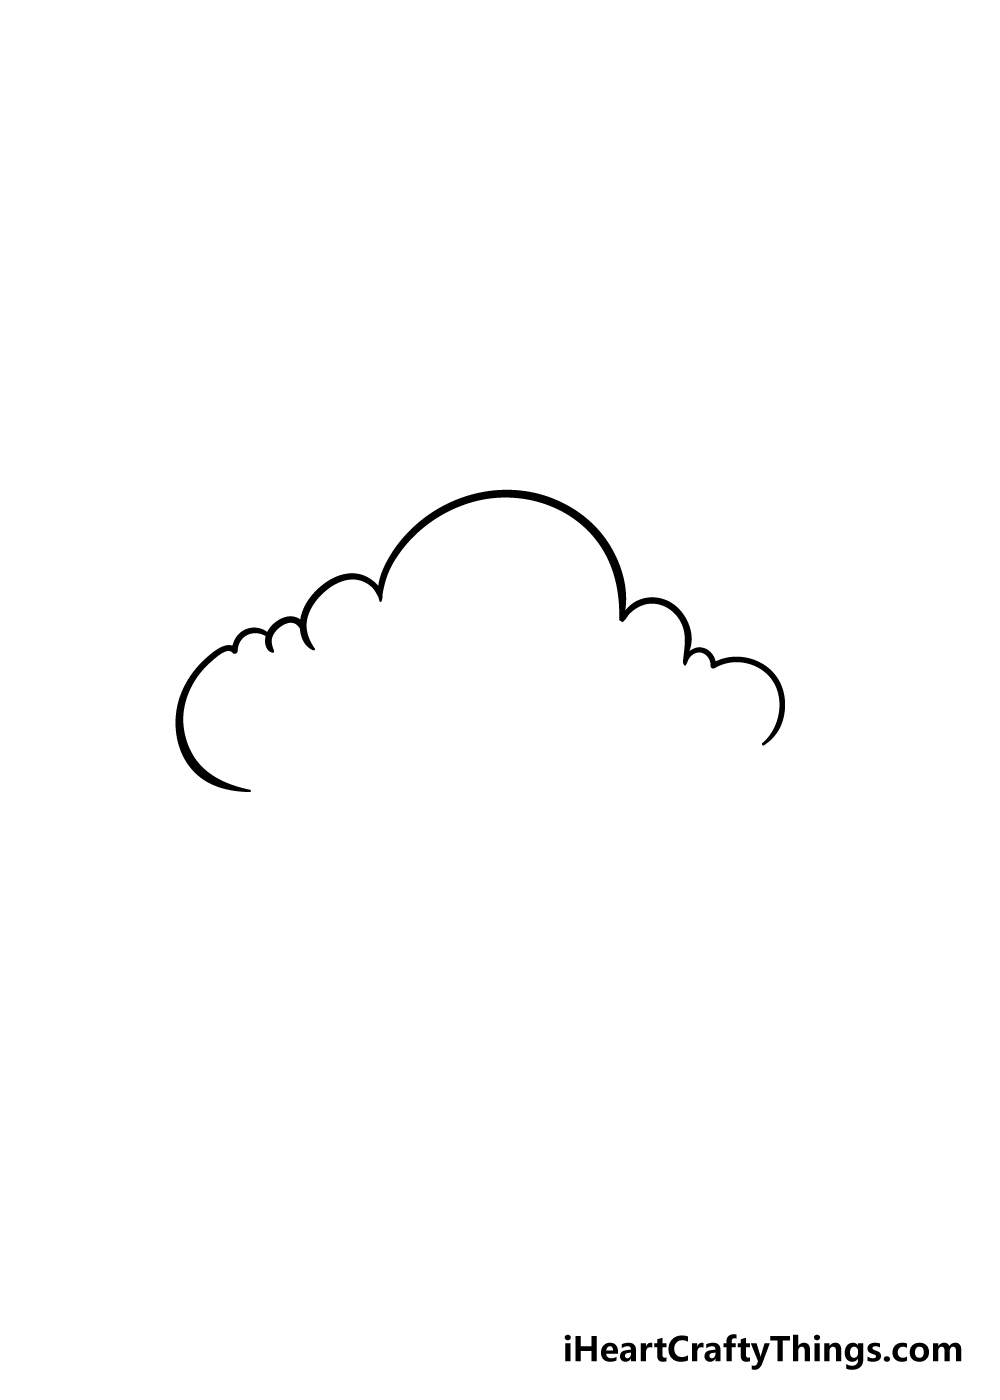 Vẽ Bầu Trời Mây cơ bản  Hướng dẫn dành cho người mới bắt đầu